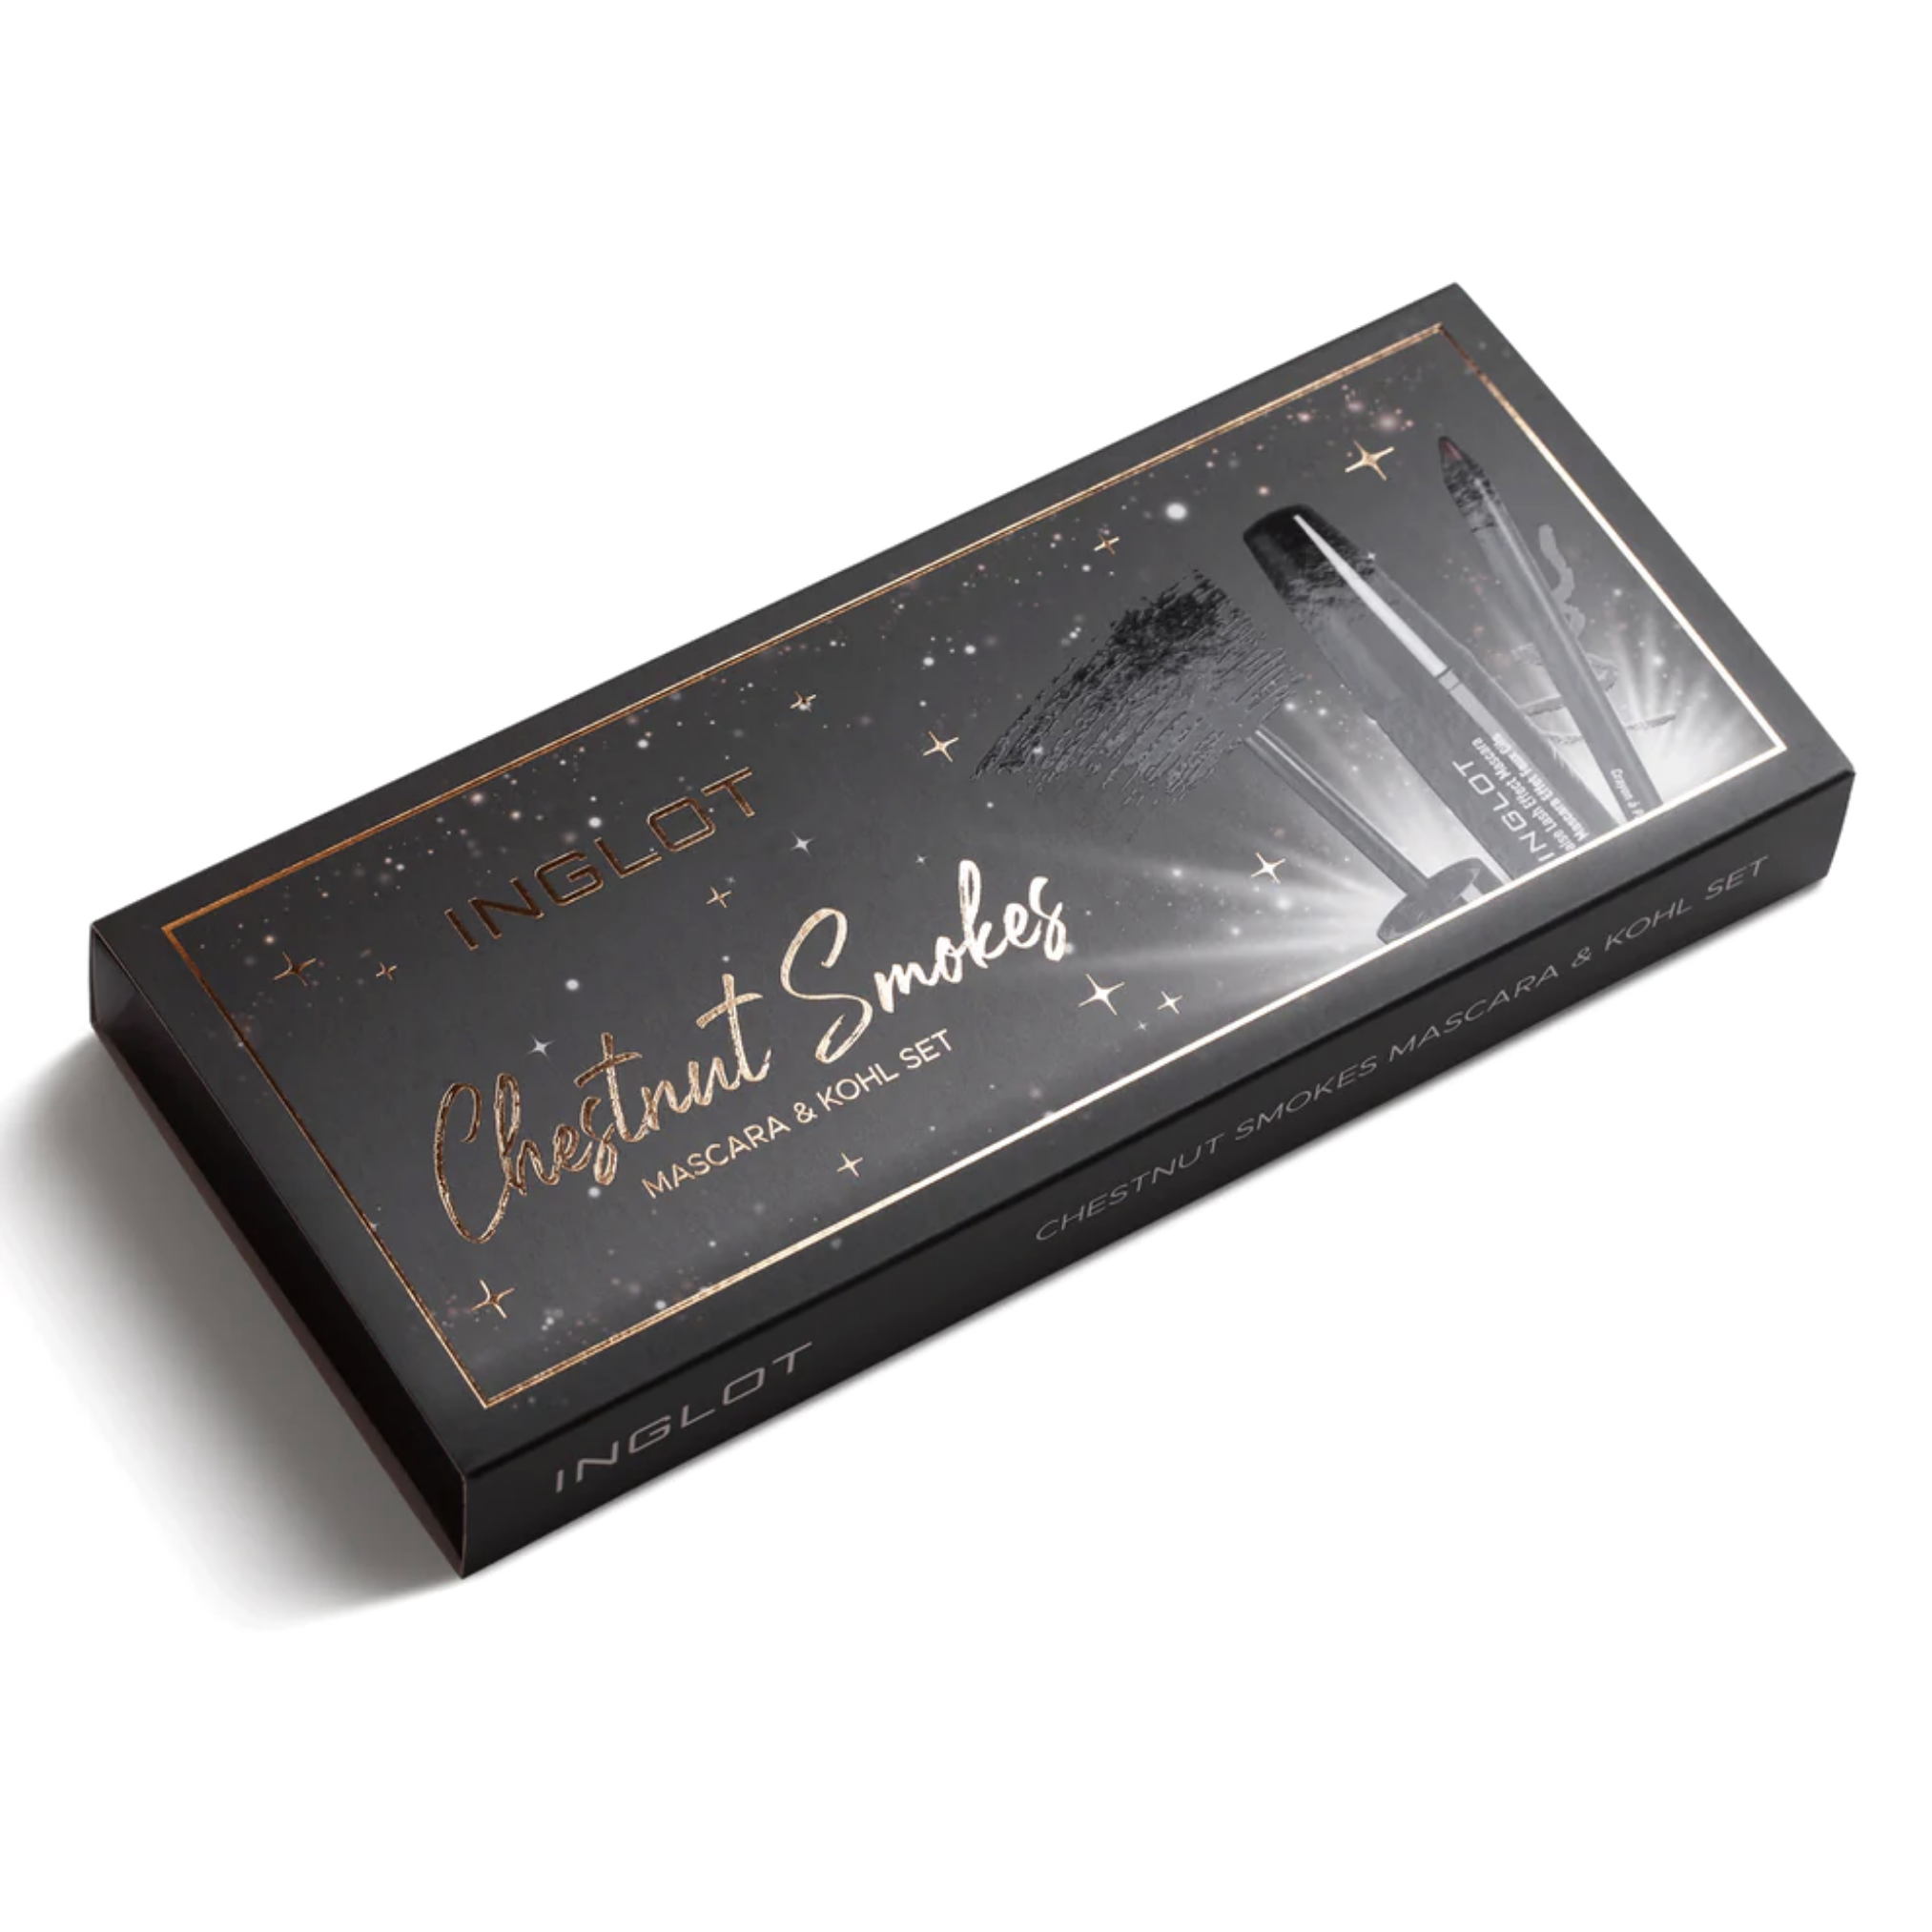 Inglot Chestnut Smokes Mascara &amp; Kohl Set, packaging